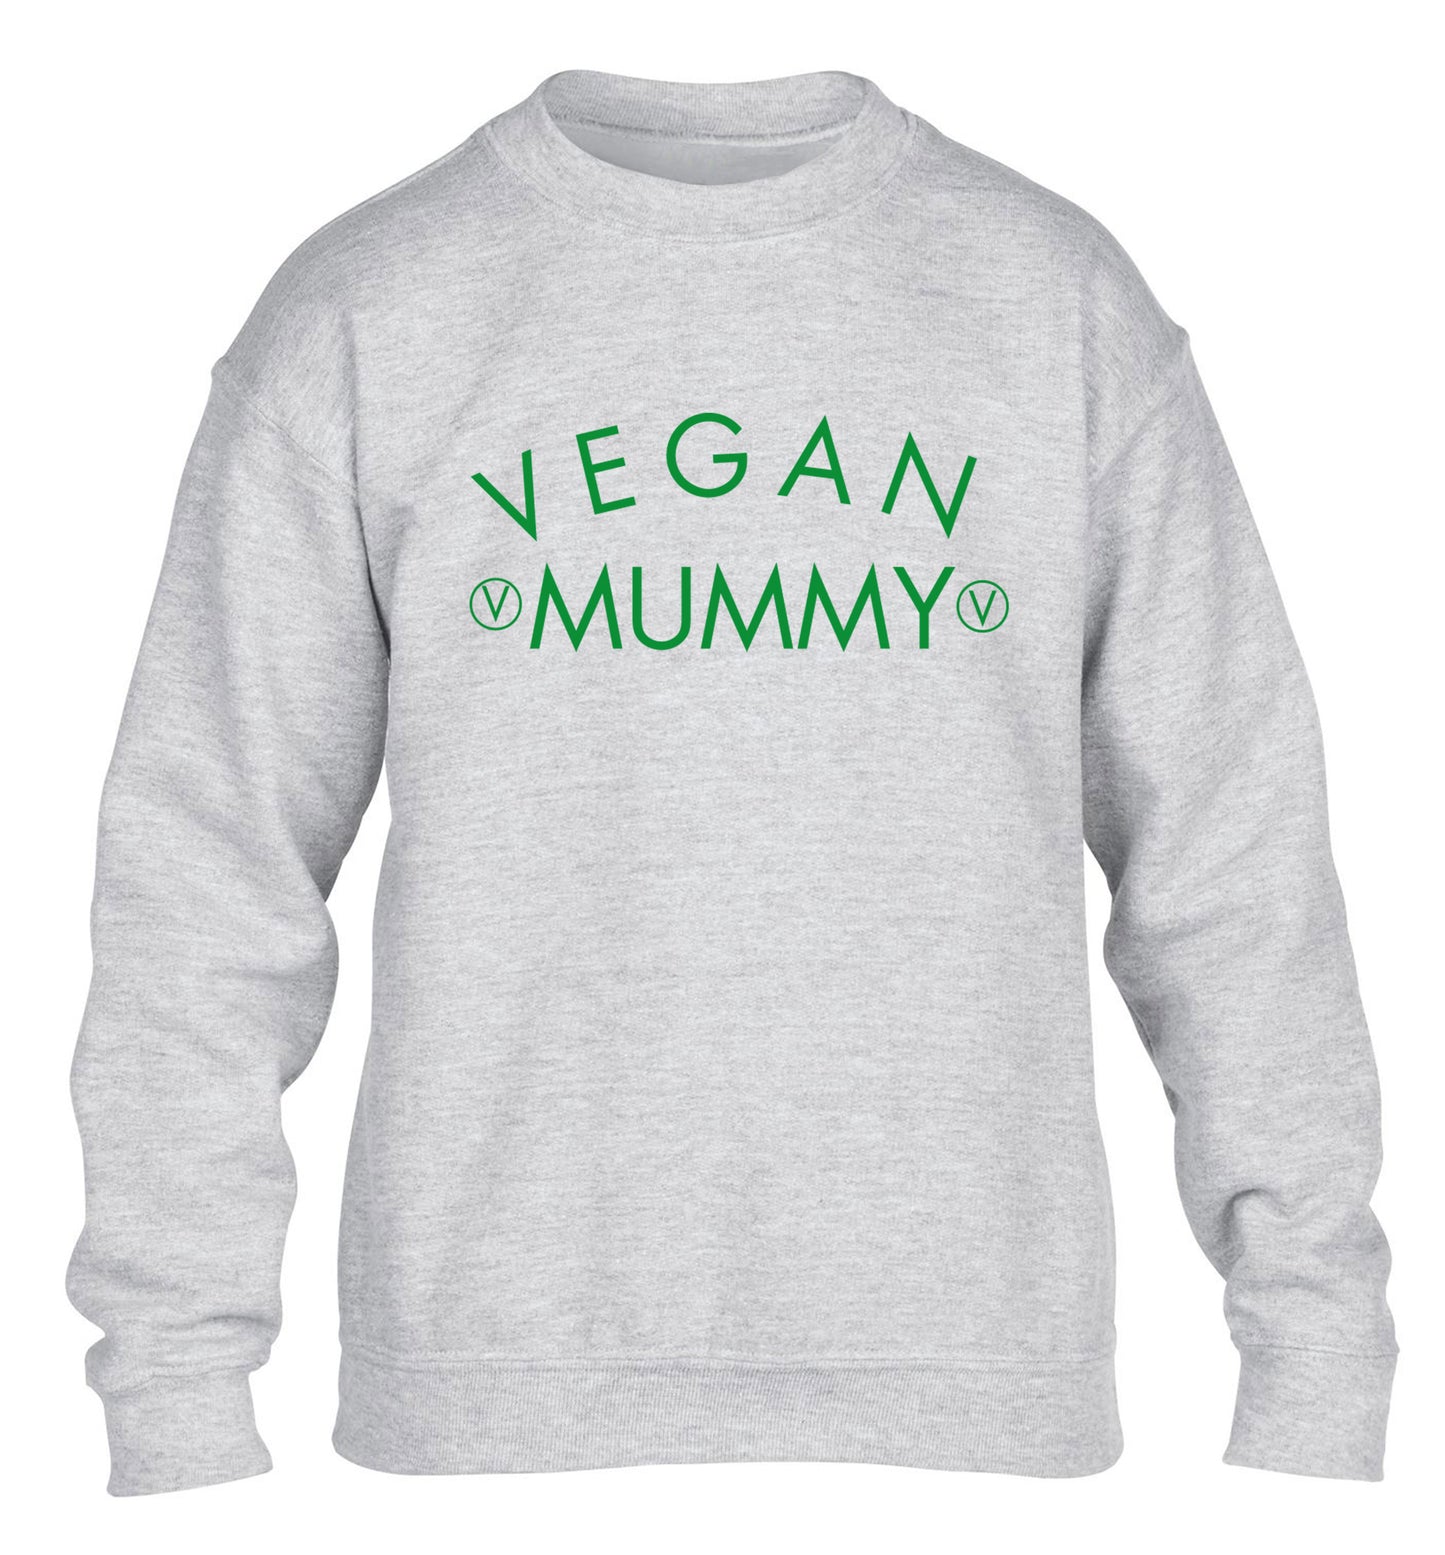 Vegan mummy children's grey sweater 12-14 Years